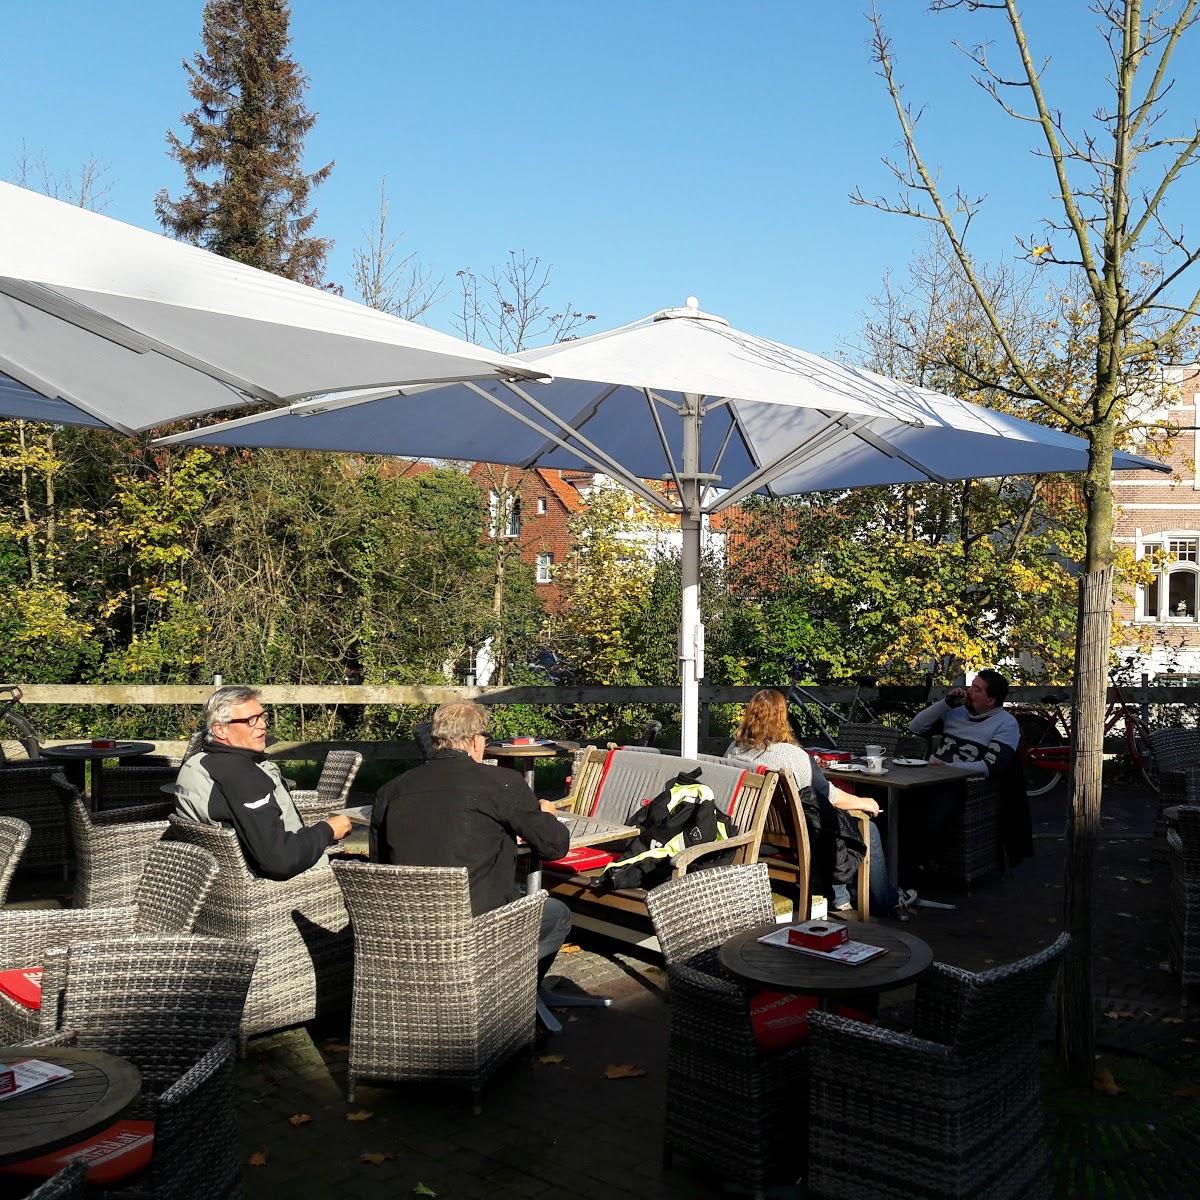 Restaurant "Cafe Extrablatt" in Nordhorn